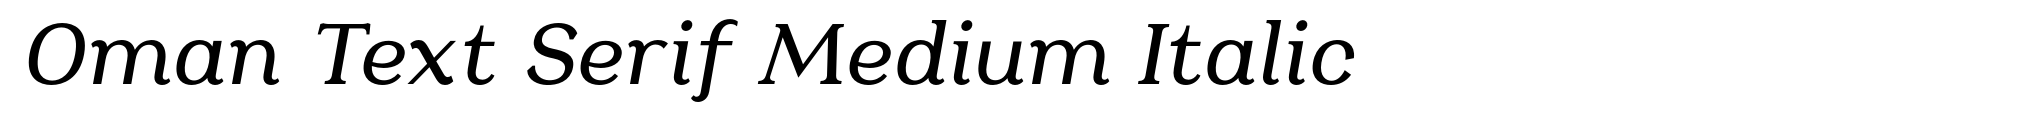 Oman Text Serif Medium Italic image